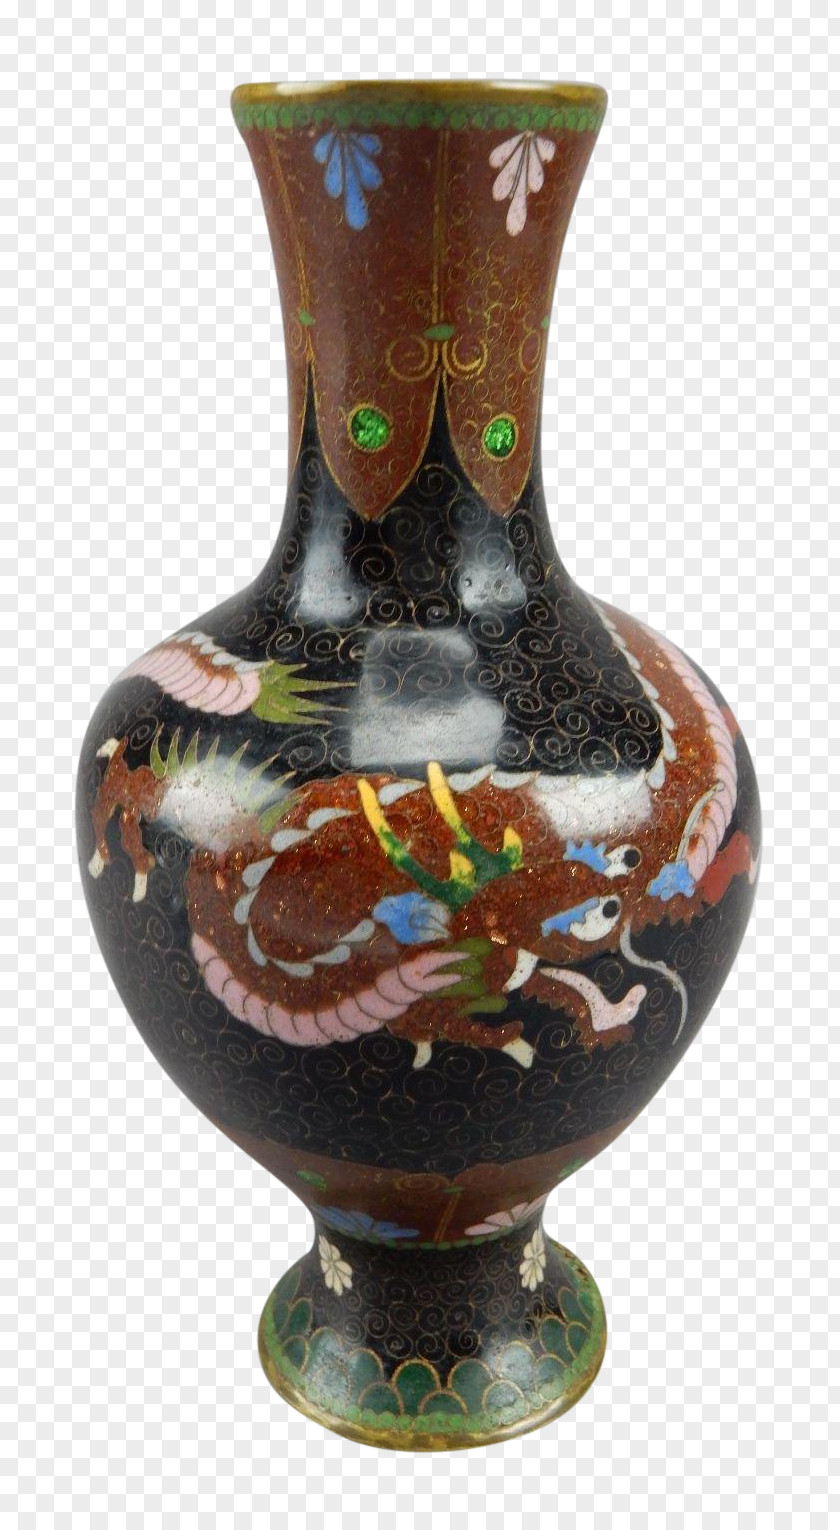 Cloisonne Vase Ceramic Pottery Urn PNG